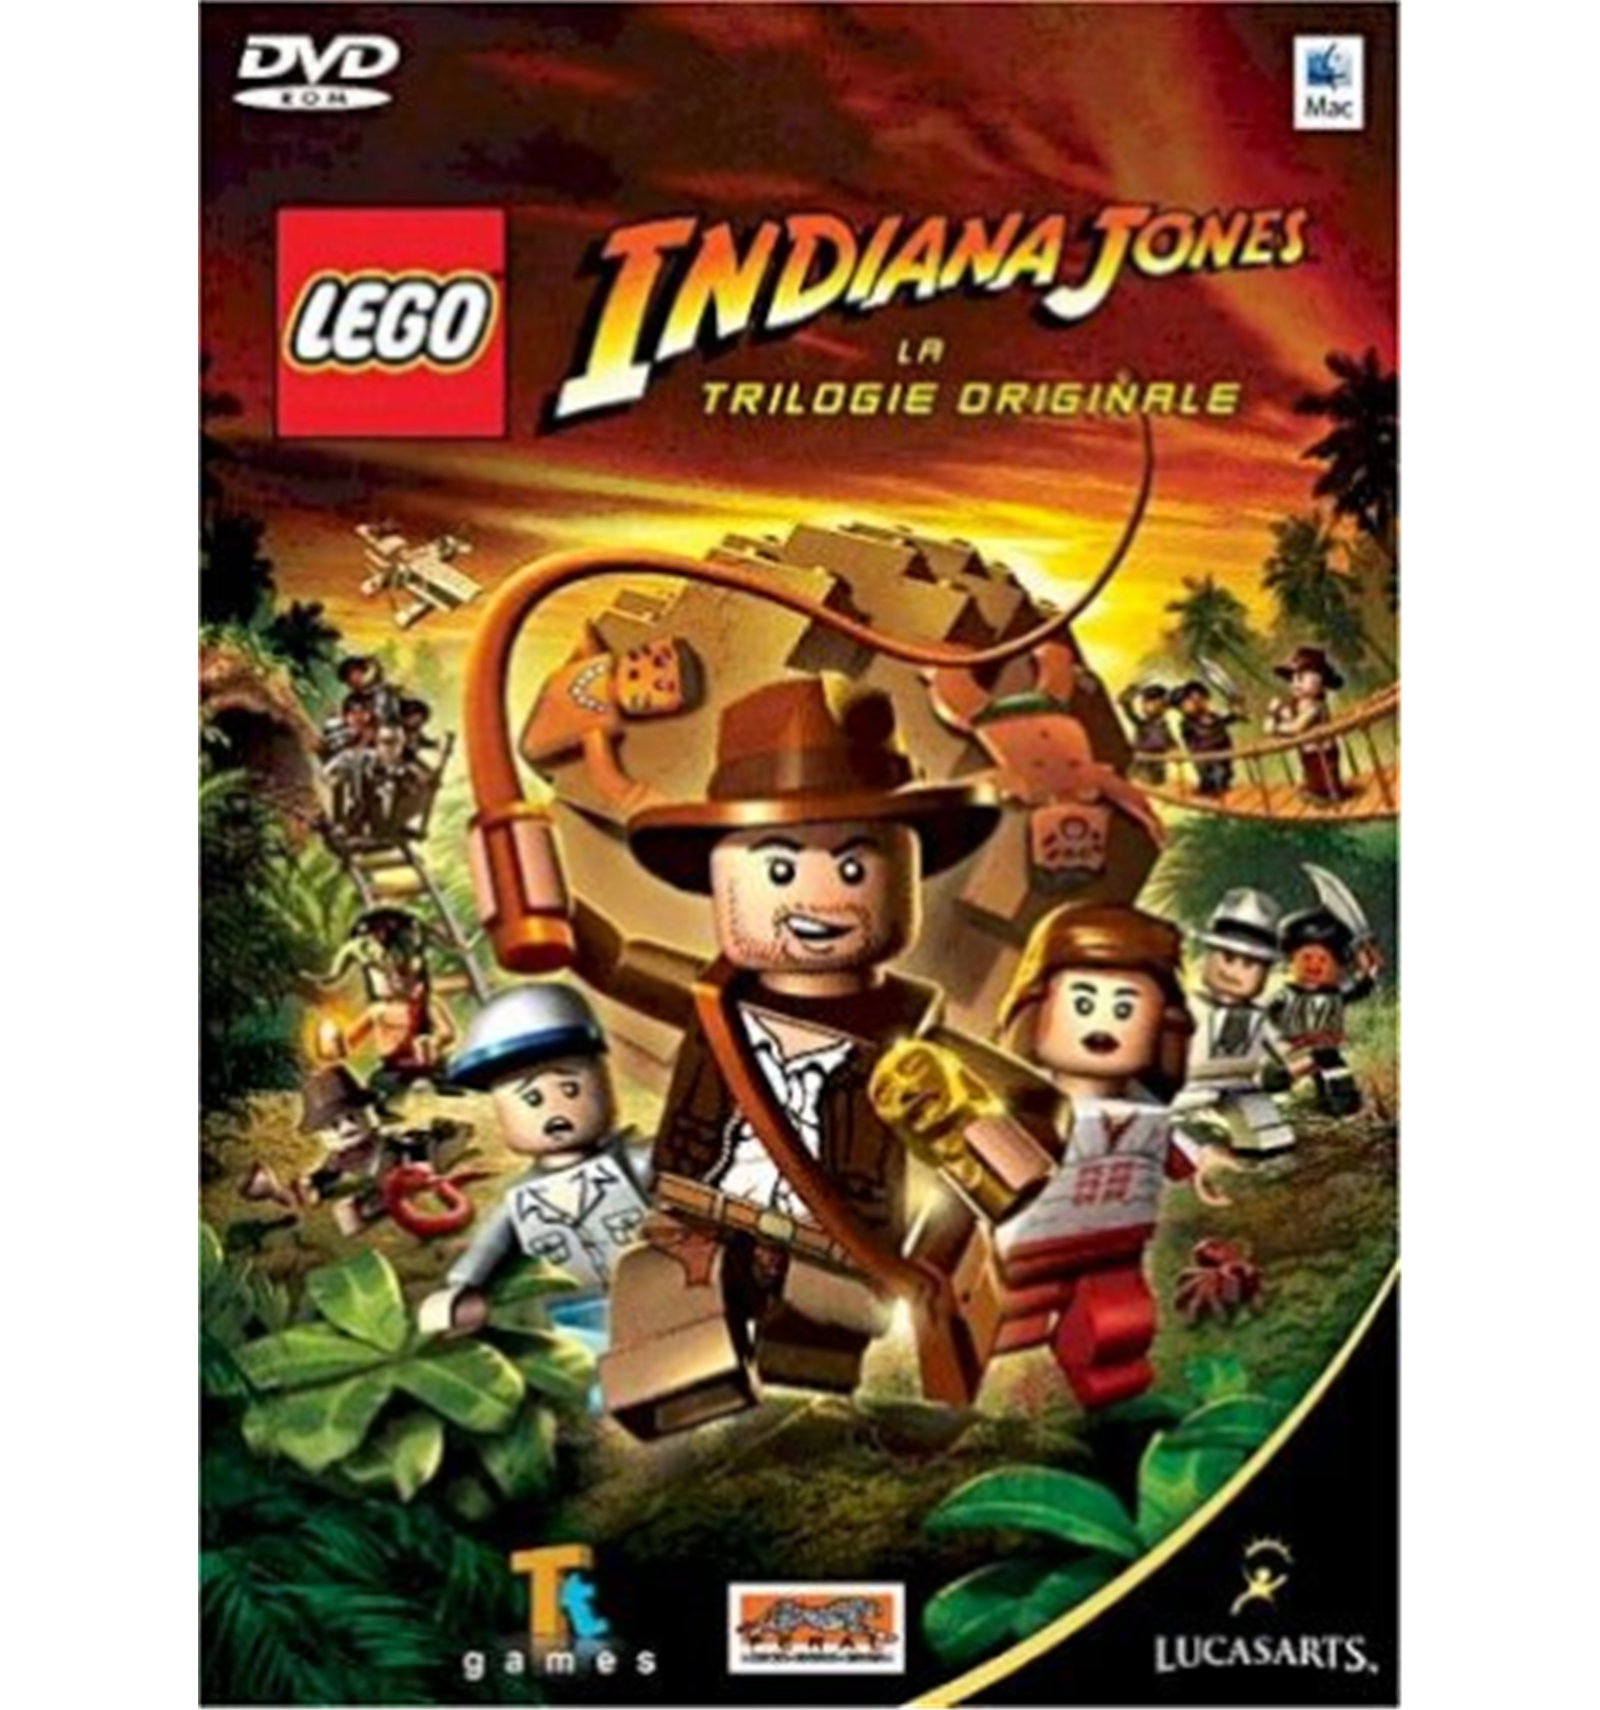 iMac-Games  Lego Indiana Jones für Mac (französisch) 